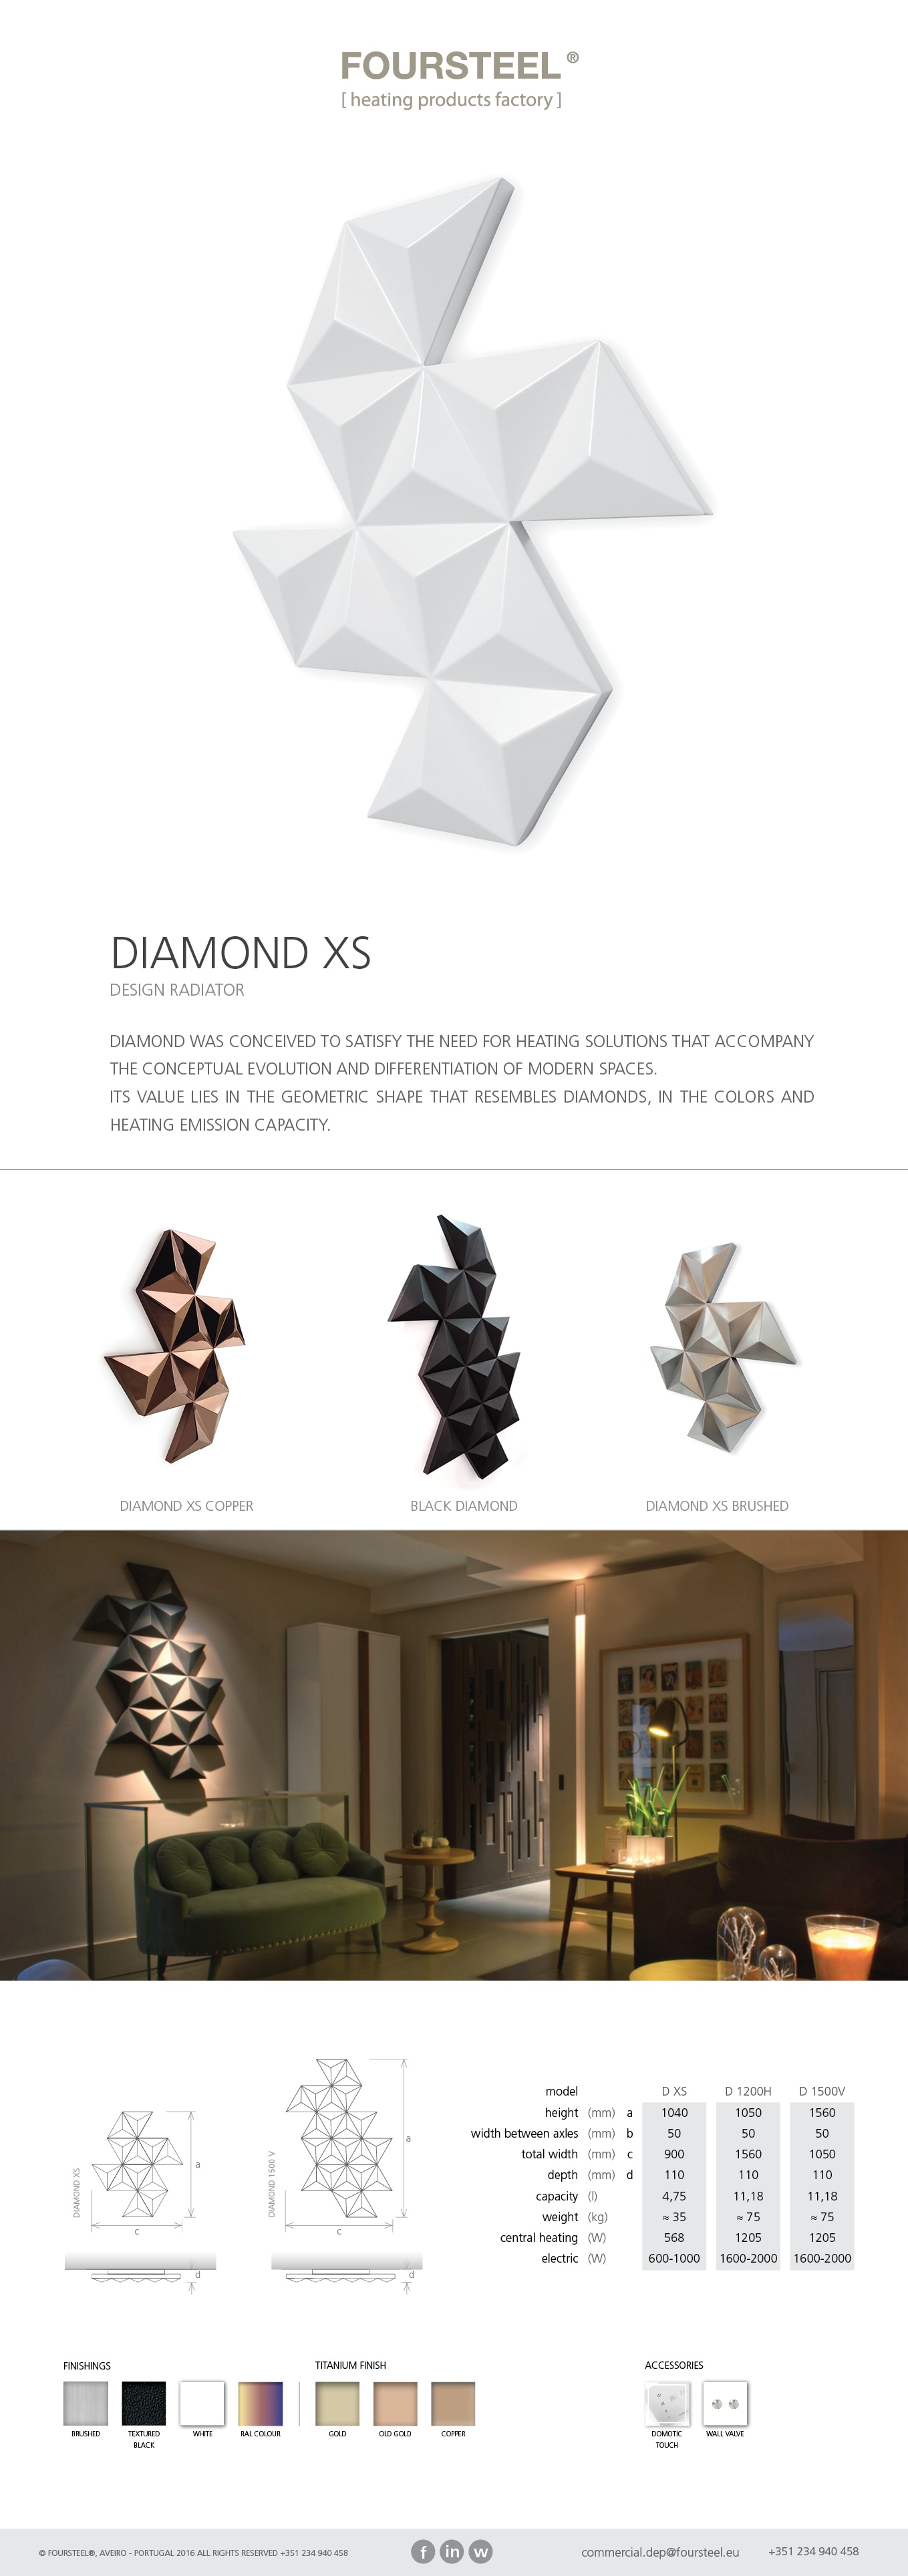 diamond xs  - may 2016